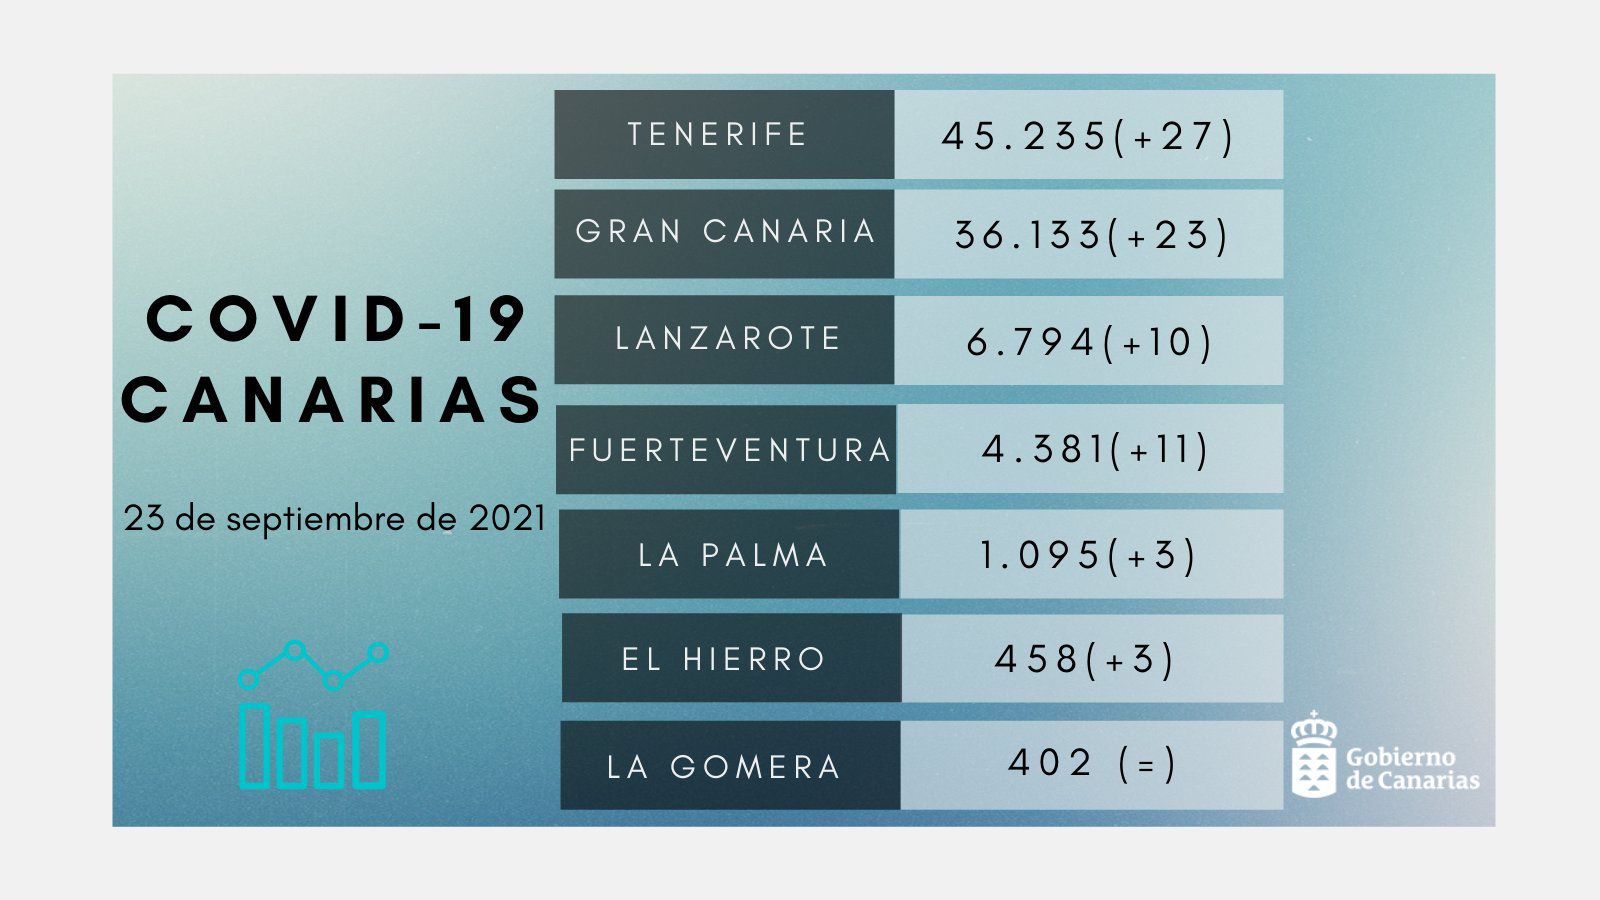 Canarias notifica 78 nuevos contagios y el fallecimiento de 2 personas en Tenerife y 1 en Gran Canaria